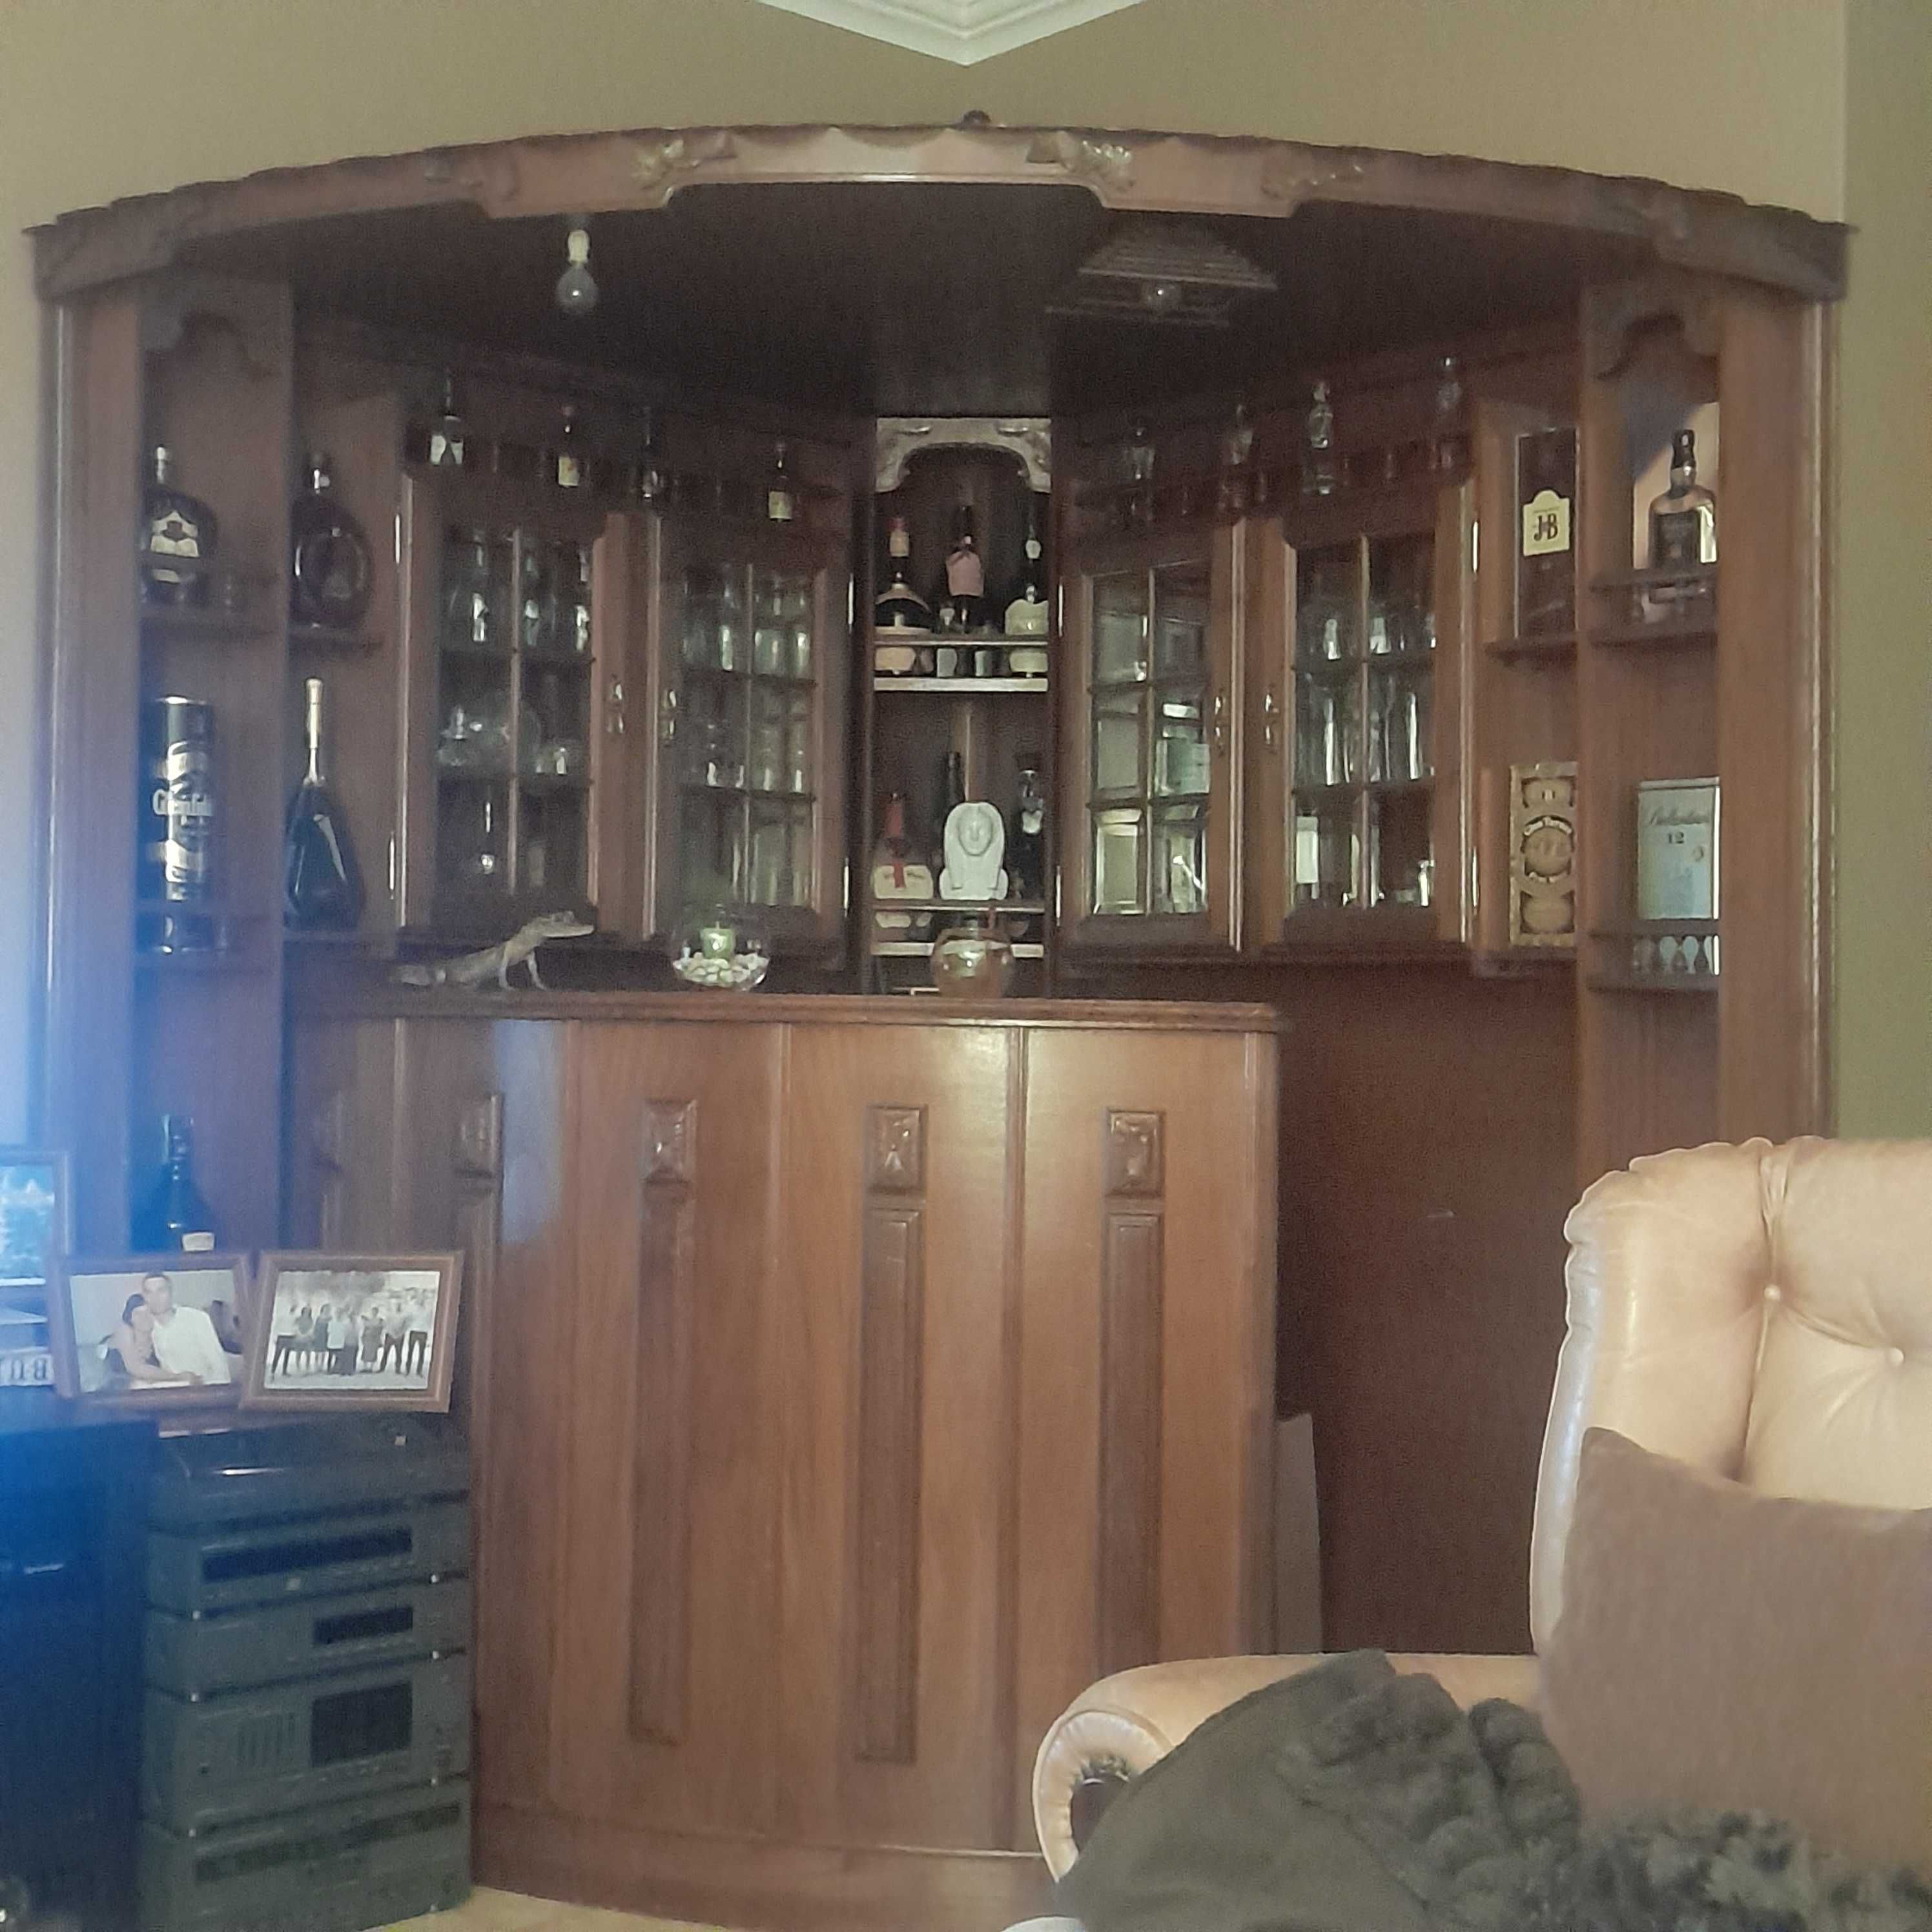 Bar de sala em madeira